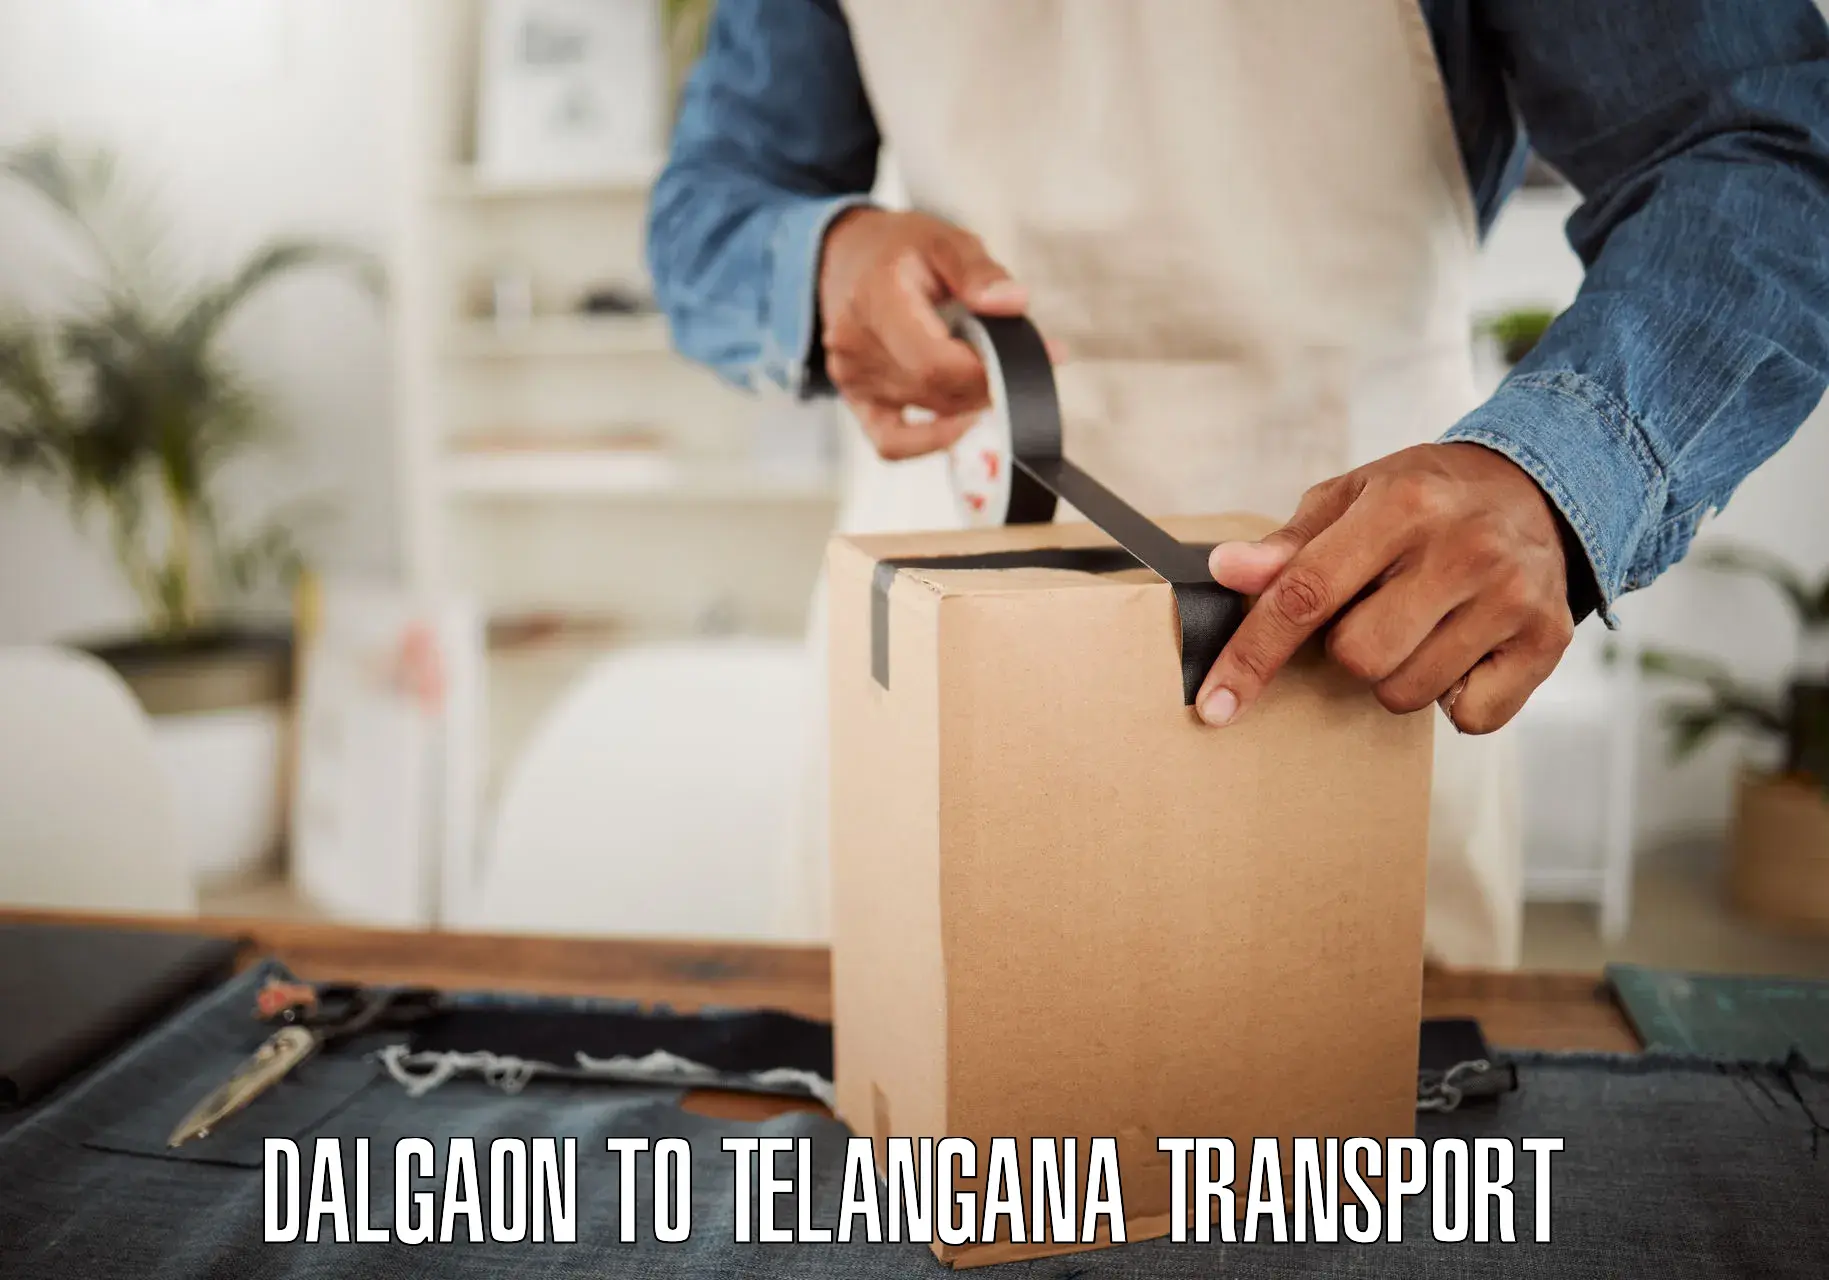 Two wheeler parcel service Dalgaon to Kalwakurthy